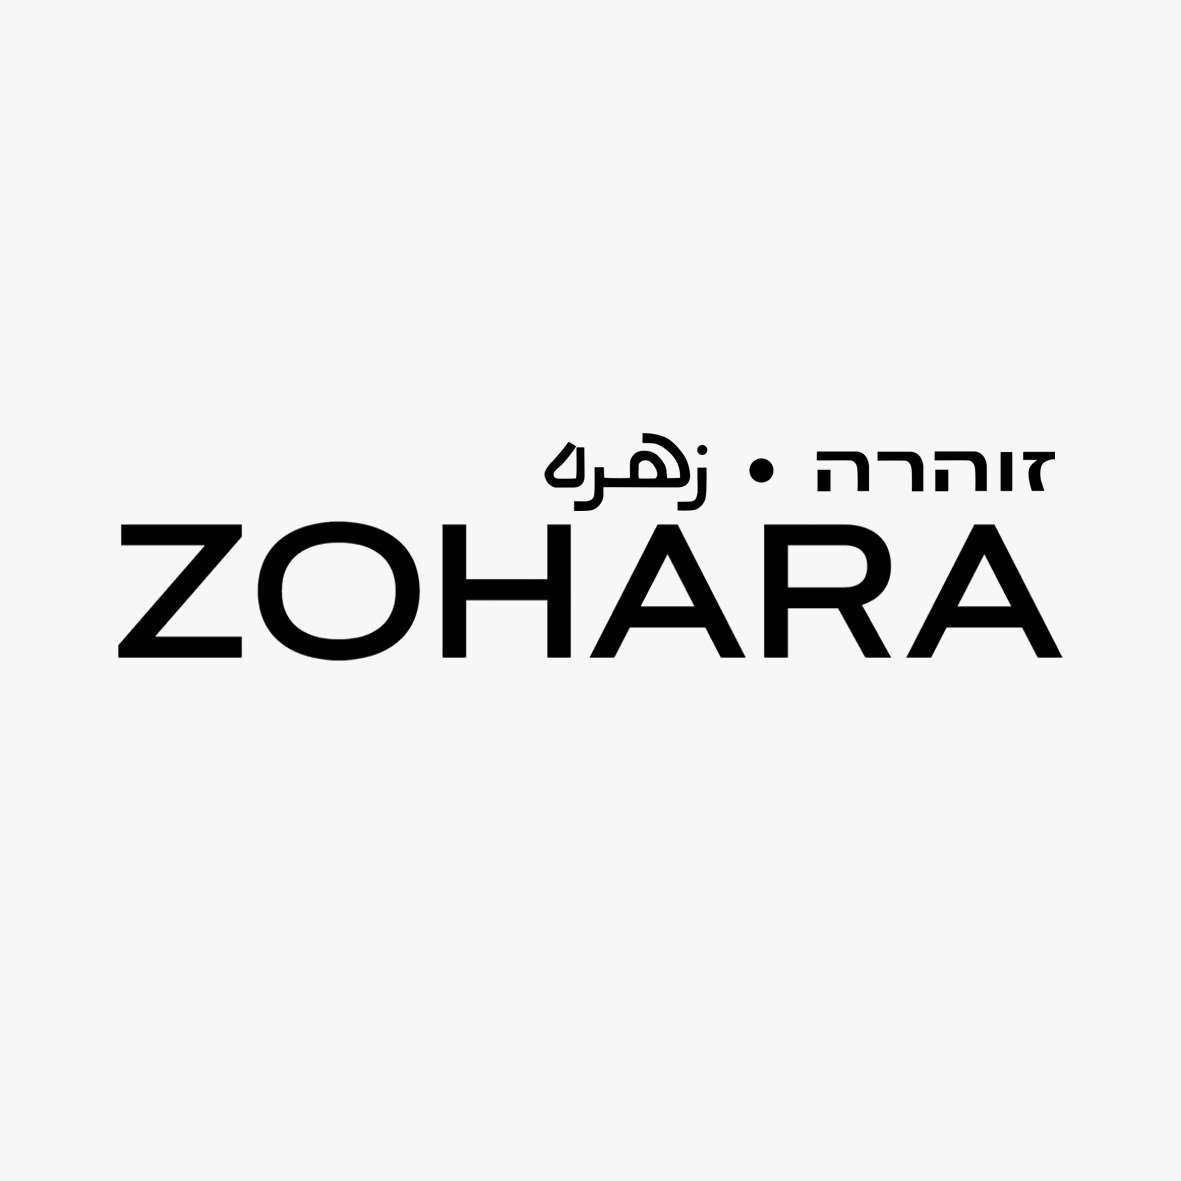 Zoharamusic